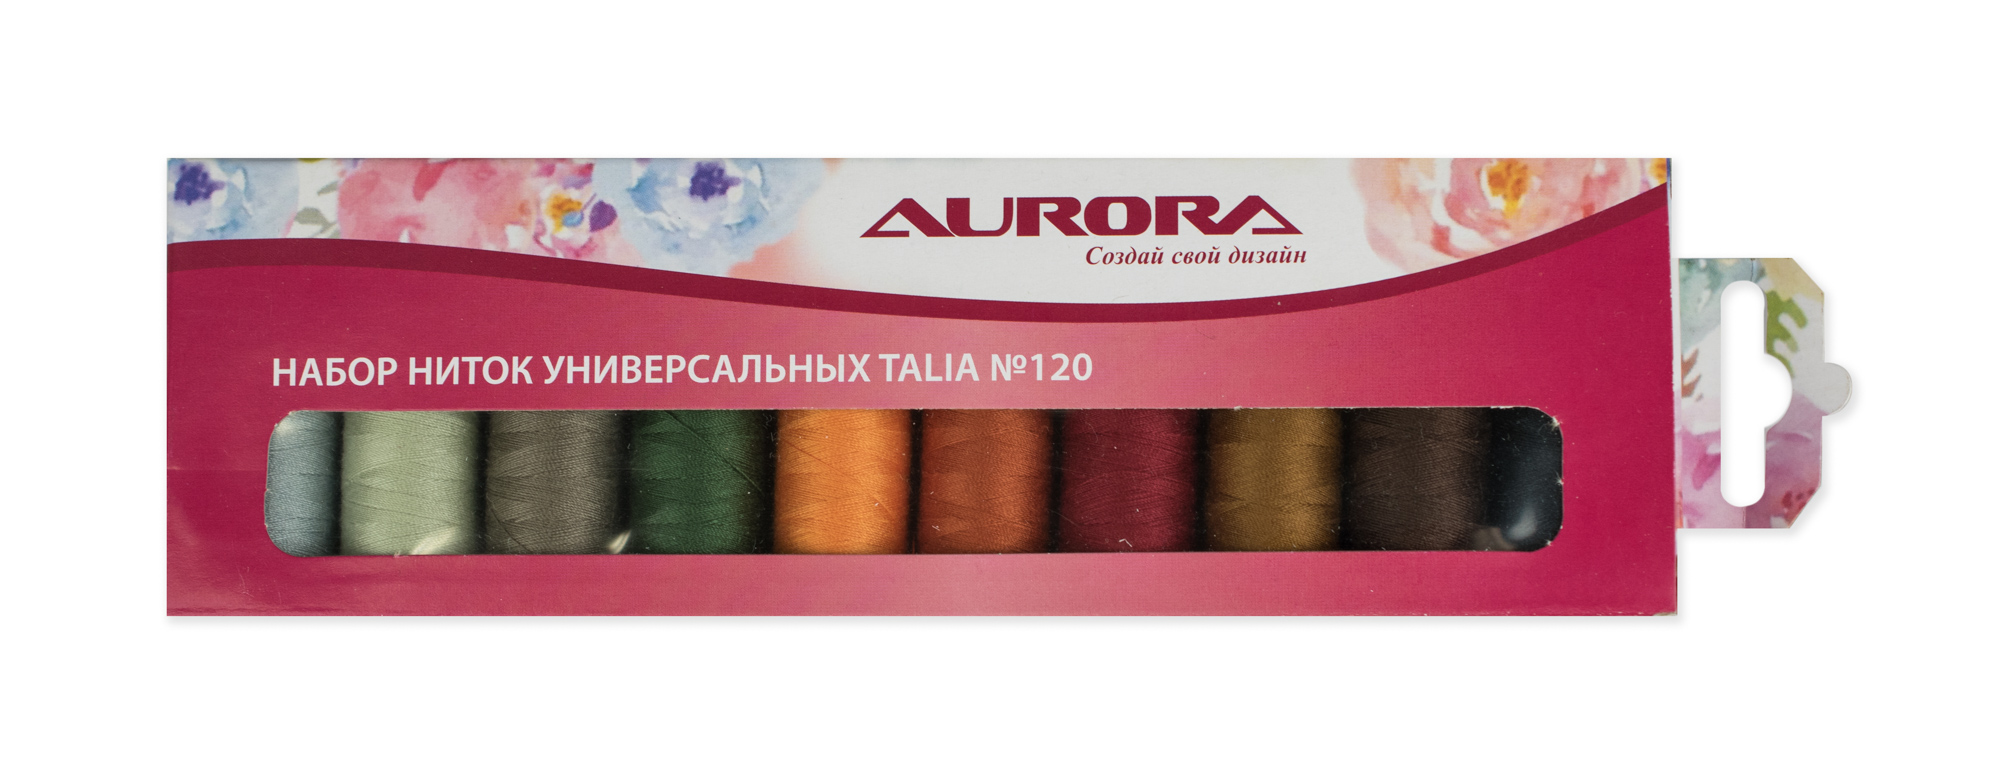 Набор ниток универсальных Talia №120 Aurora оптом